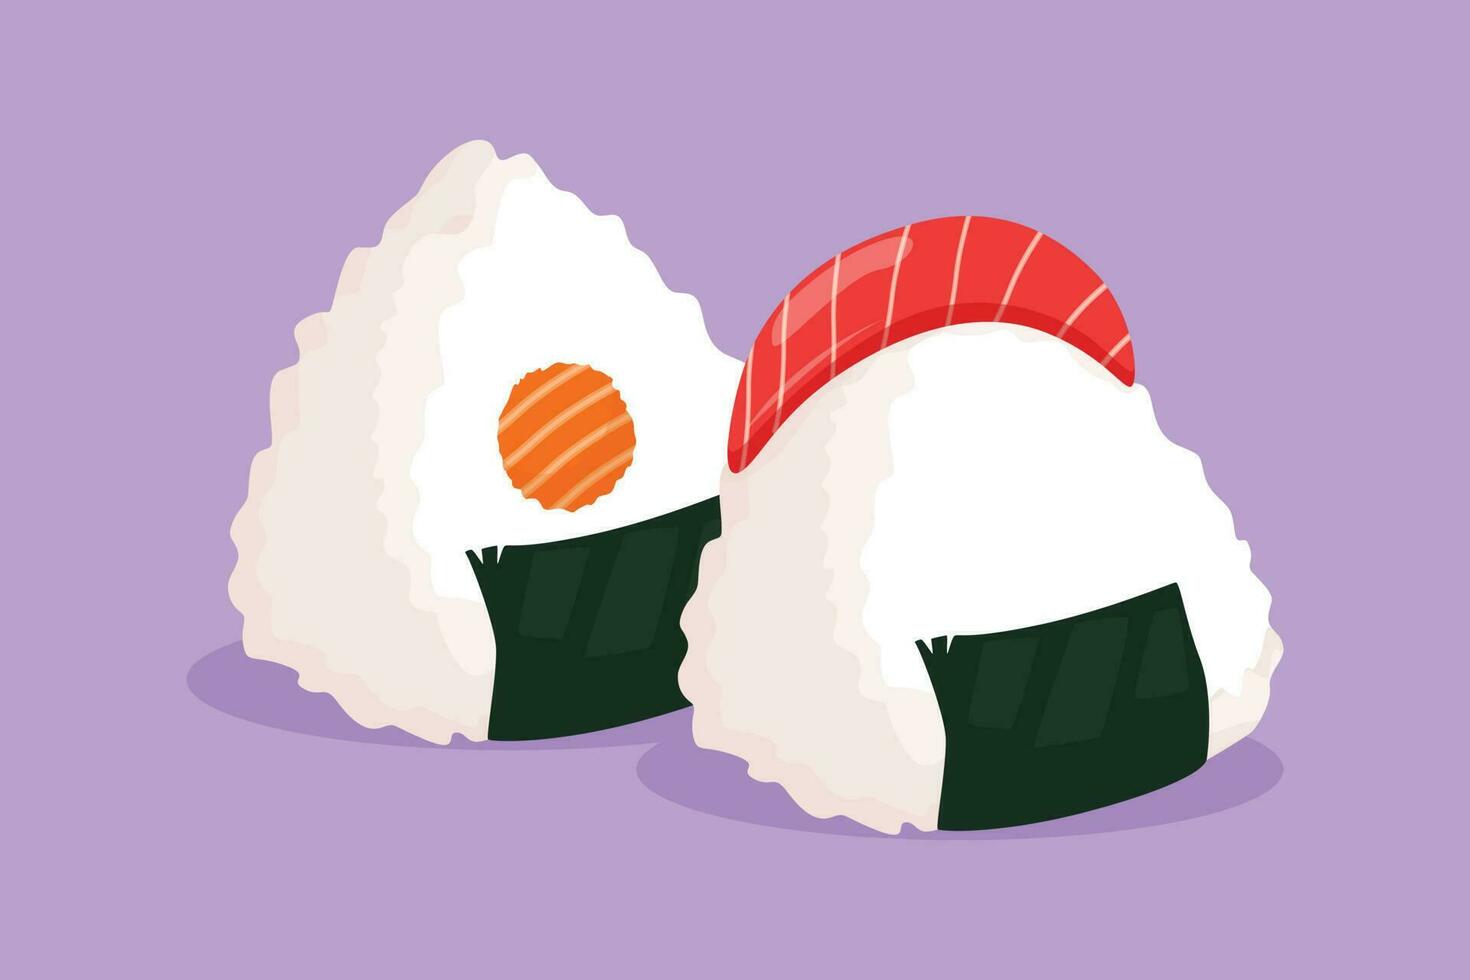 Charakter eben Zeichnung stilisiert japanisch Onigiri Logo Etikett, Flyer, Aufkleber, Symbol. Emblem Meeresfrüchte Sushi Restaurant Konzept zum Cafe, Geschäft oder Essen Lieferung Service. Karikatur Design Vektor Illustration